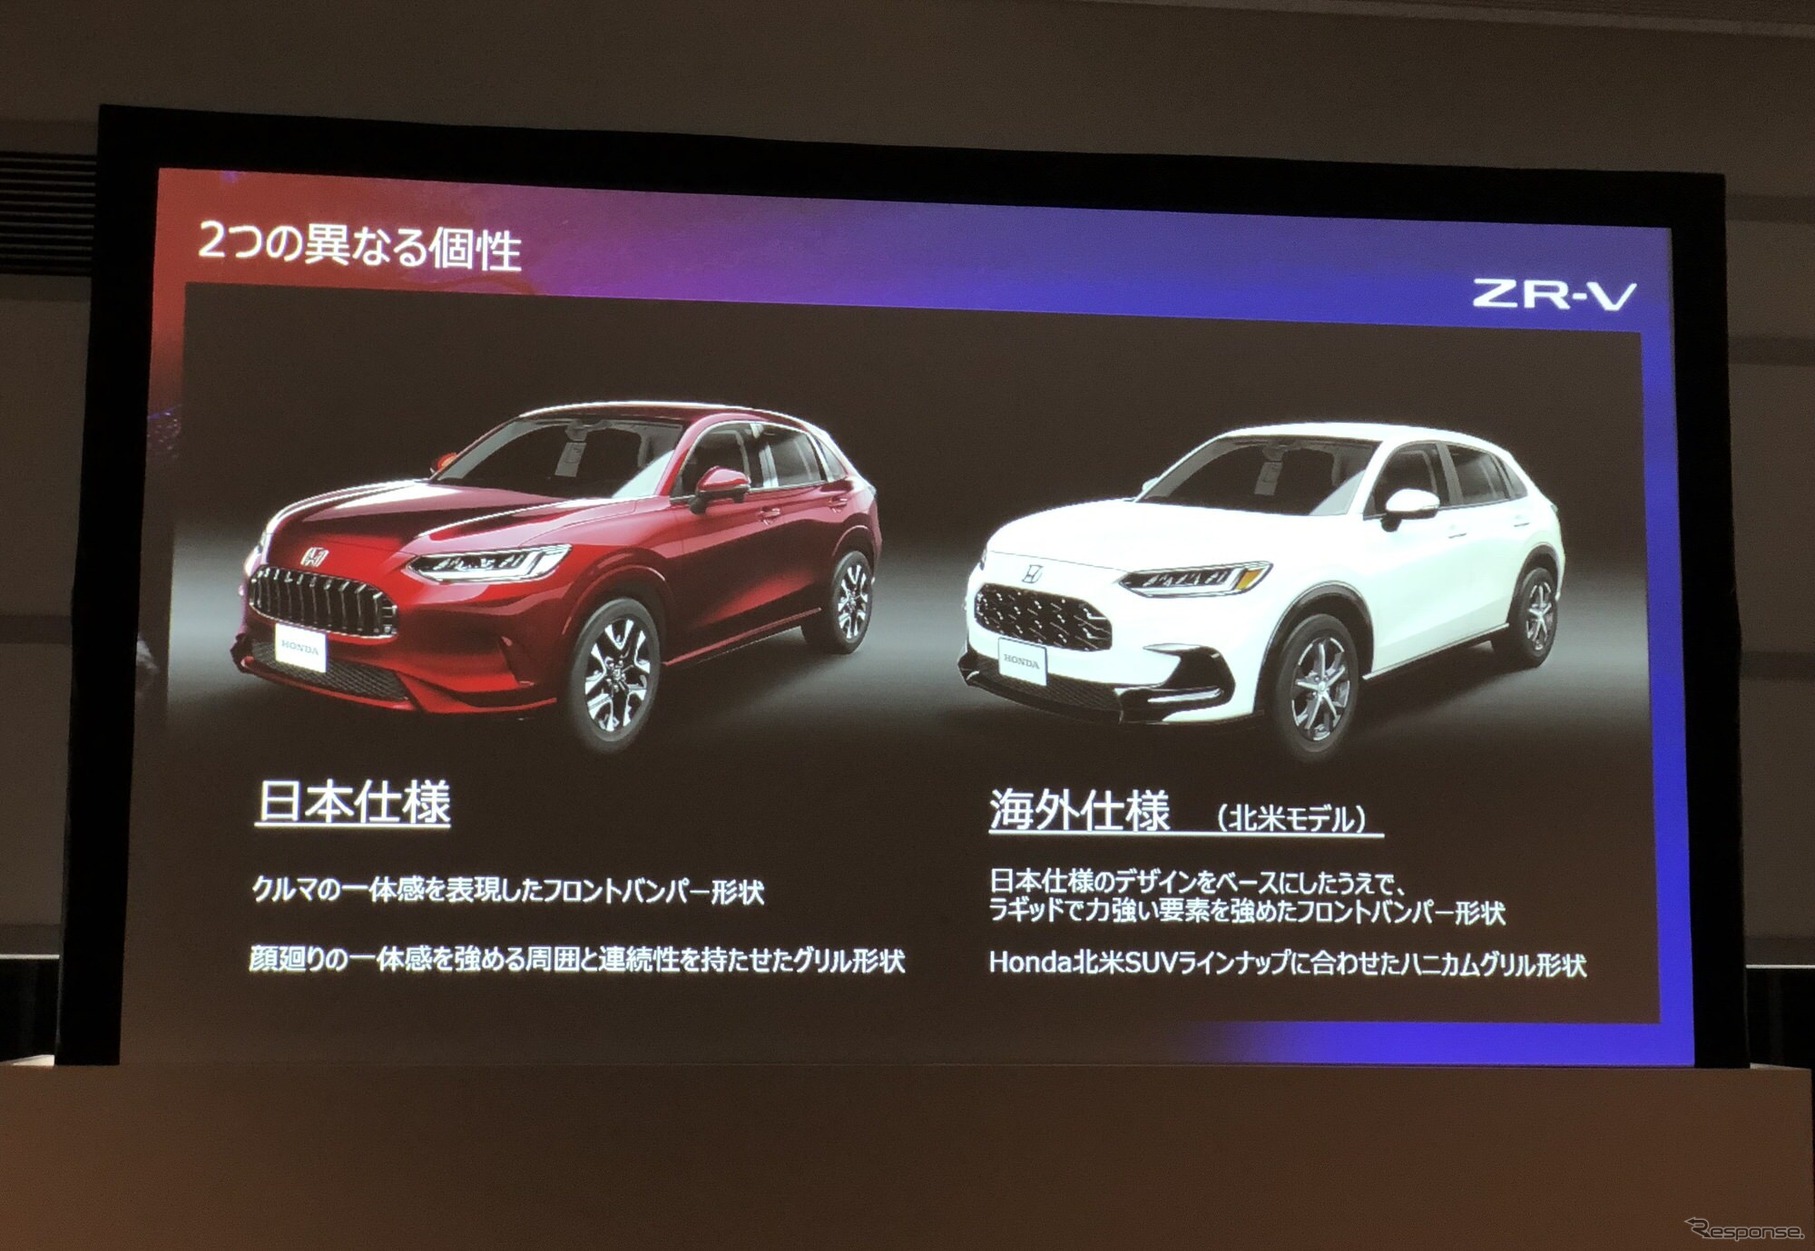 ホンダ ZR-V 日本仕様と海外仕様の違い